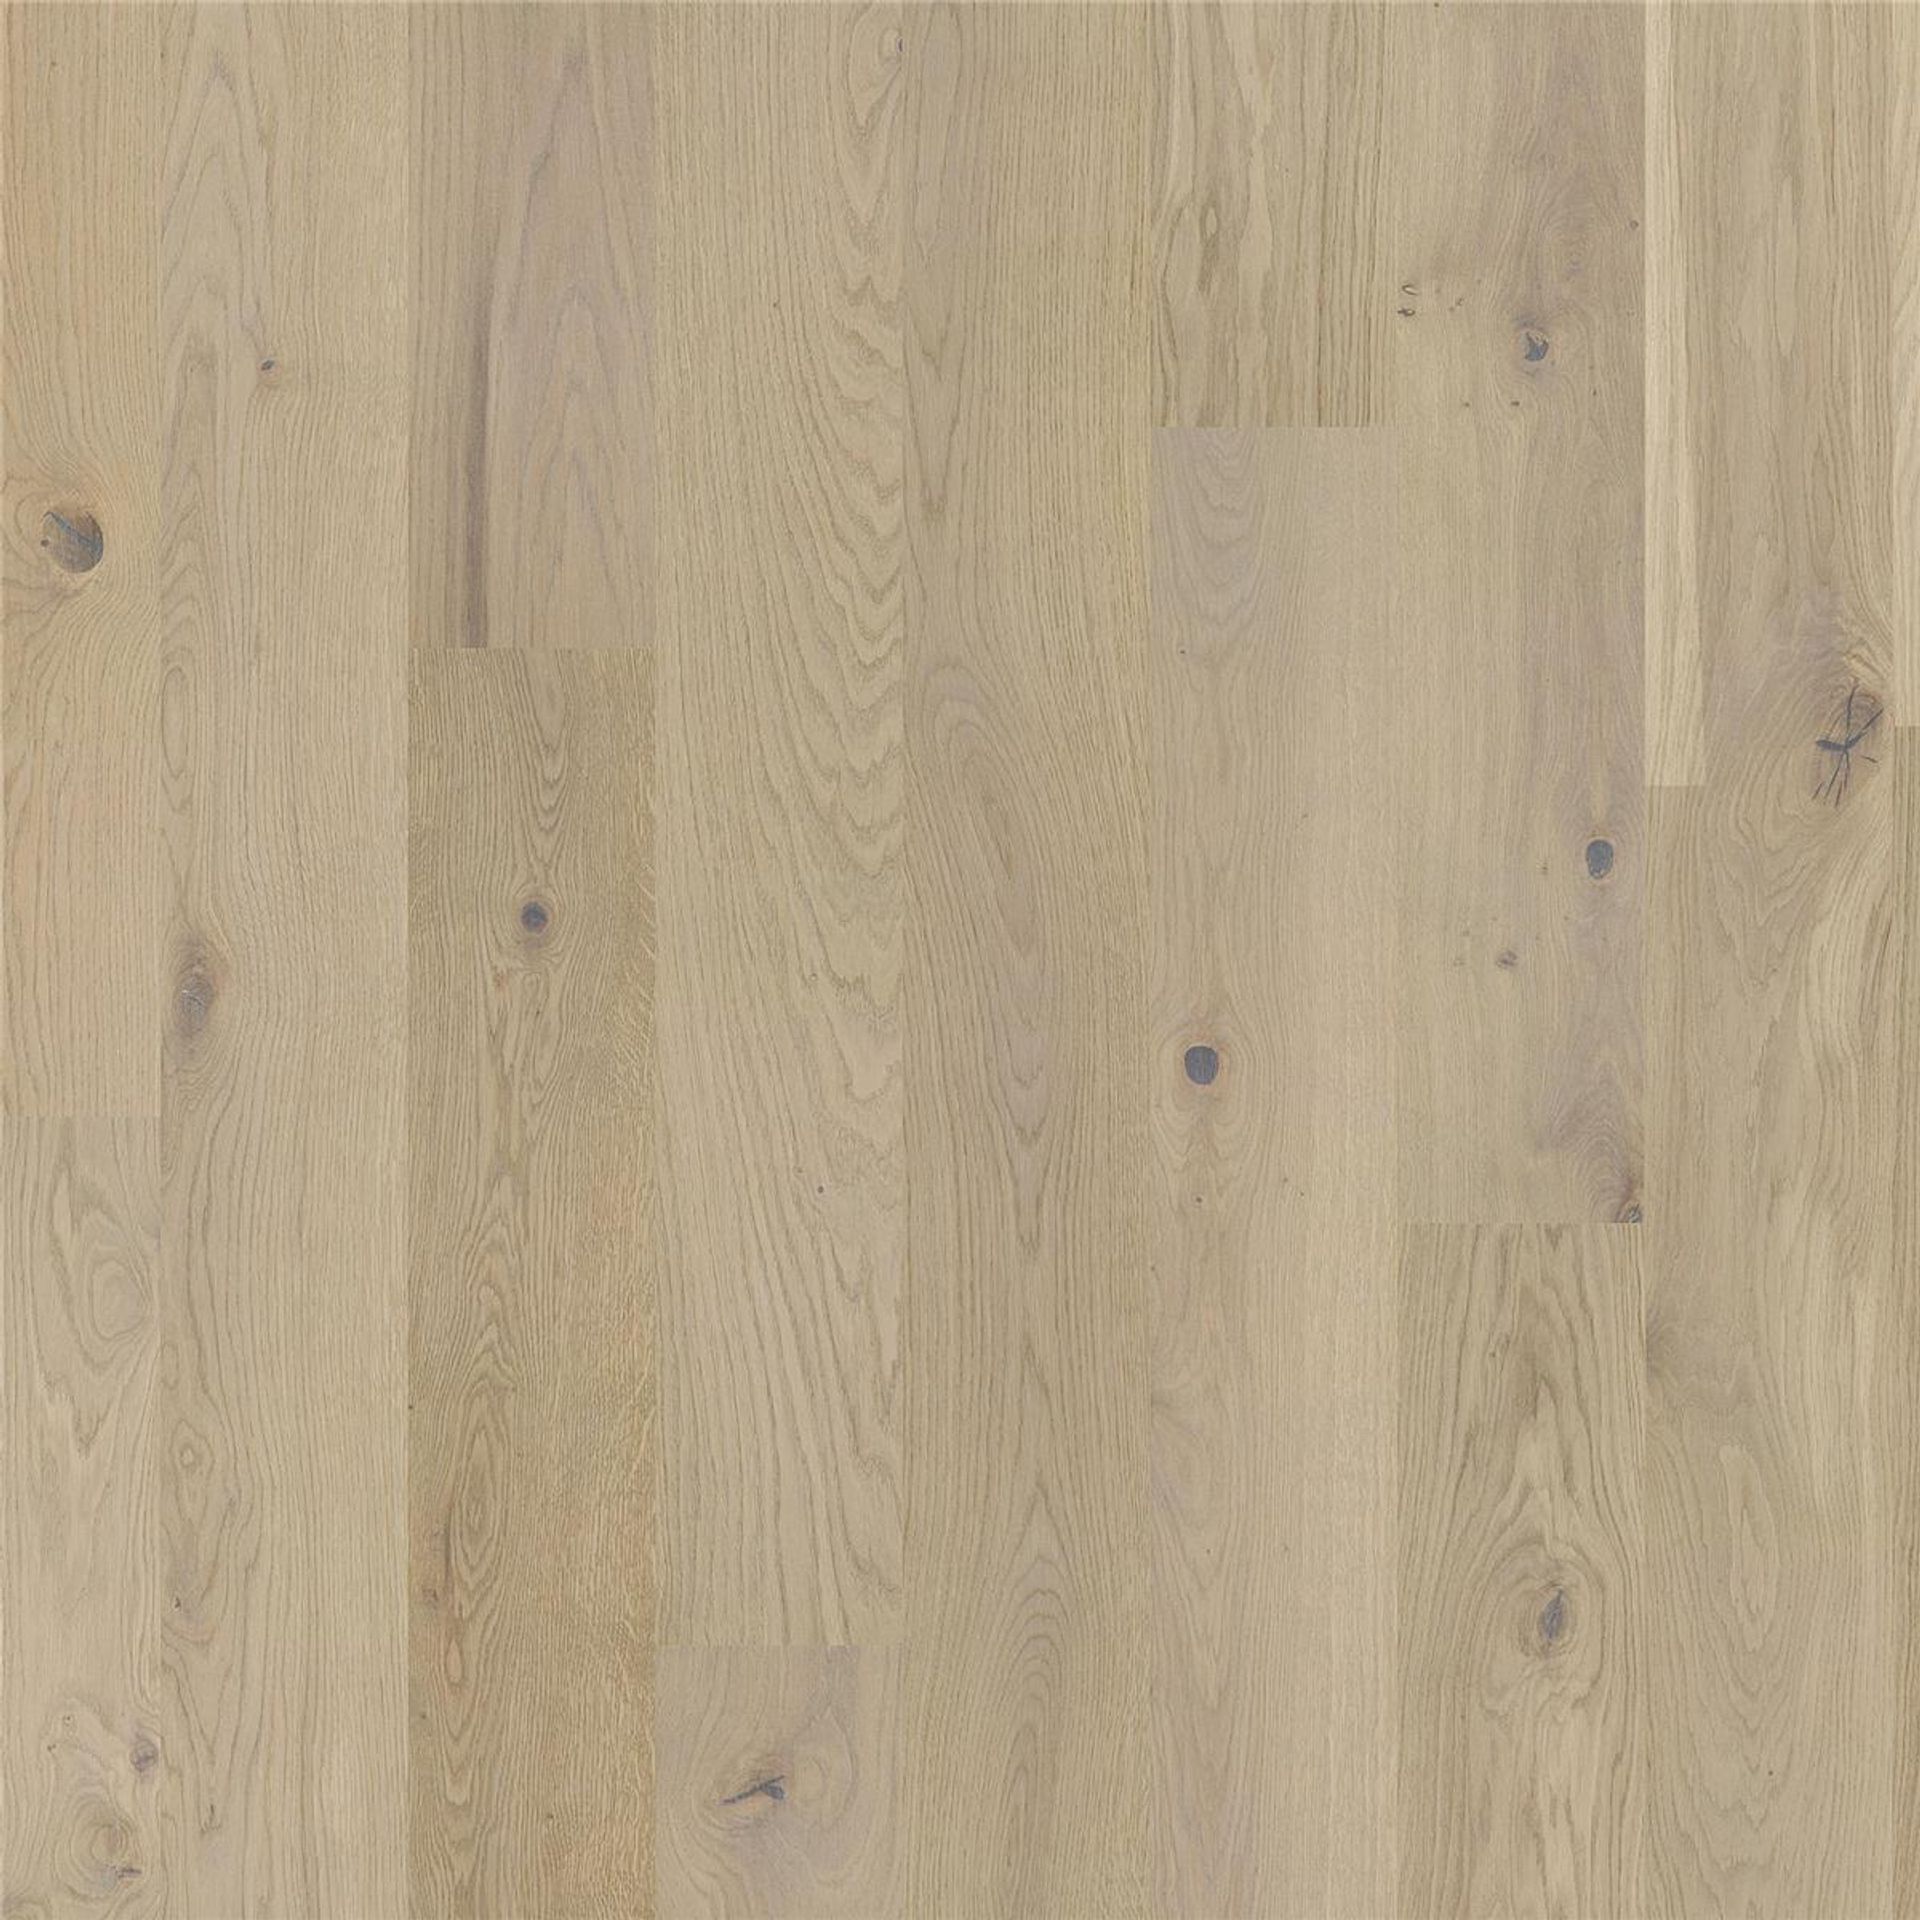 Holzboden Eiche Soft beige gebürstet 1 Stab MADRID-TB15 Planke 162 x 2200 mm